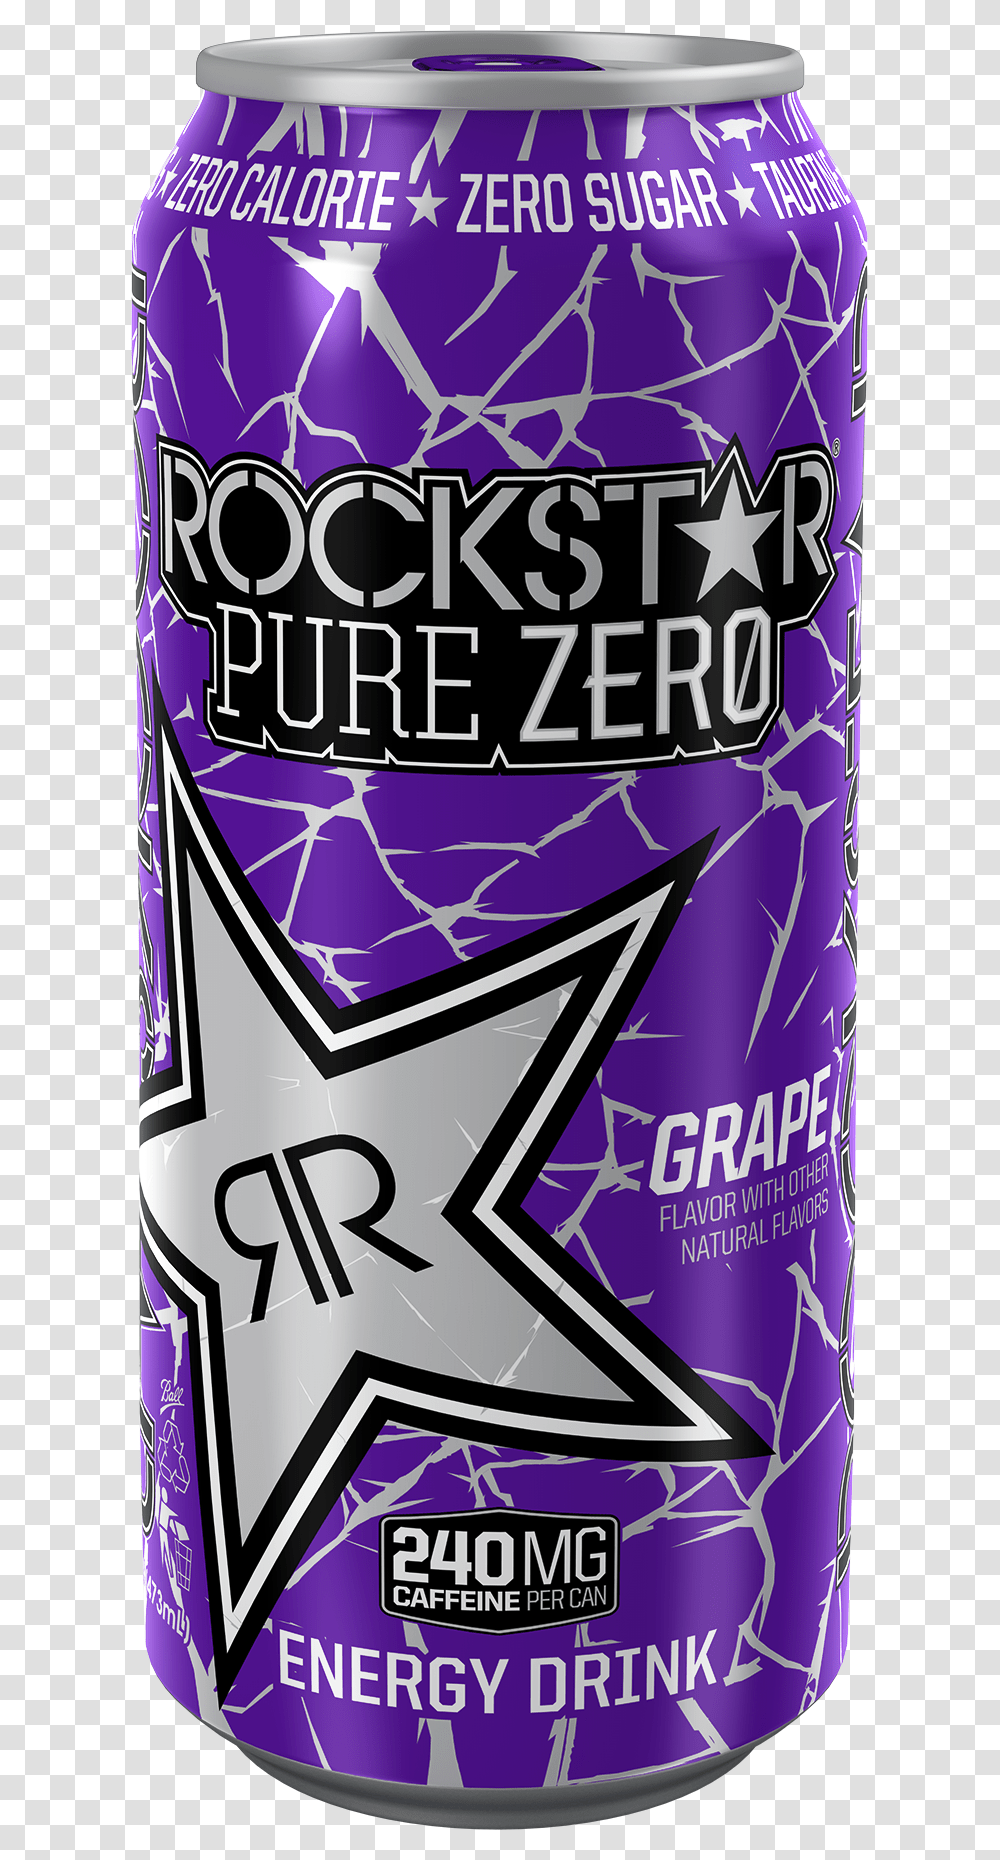 Rockstar Pure Zero Grape, Tin, Can, Spray Can, Aluminium Transparent Png